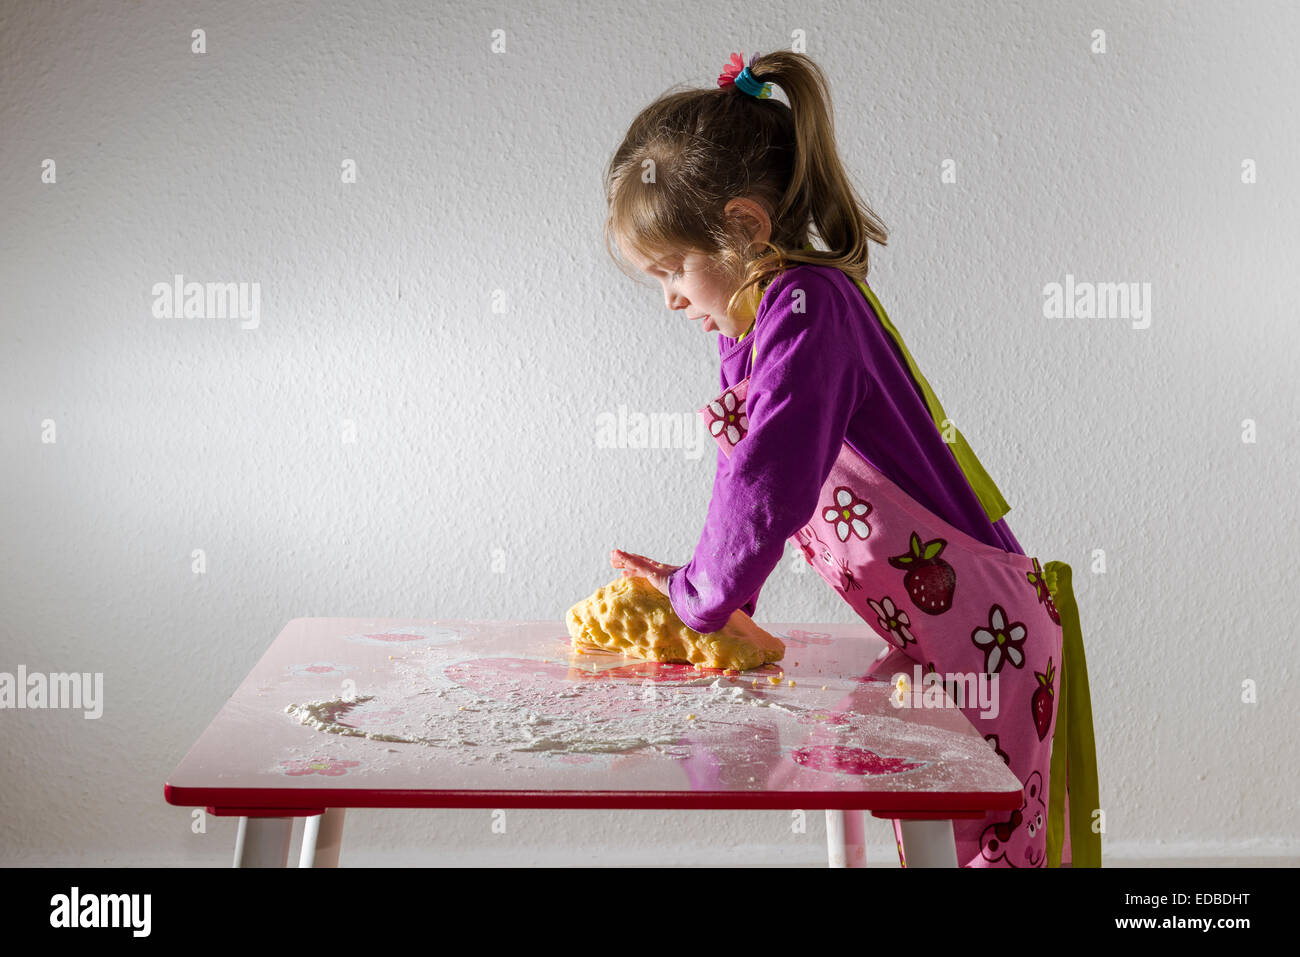 Fille, 3 ans, la levure, pétrir un morceau de pâte sur une table Banque D'Images